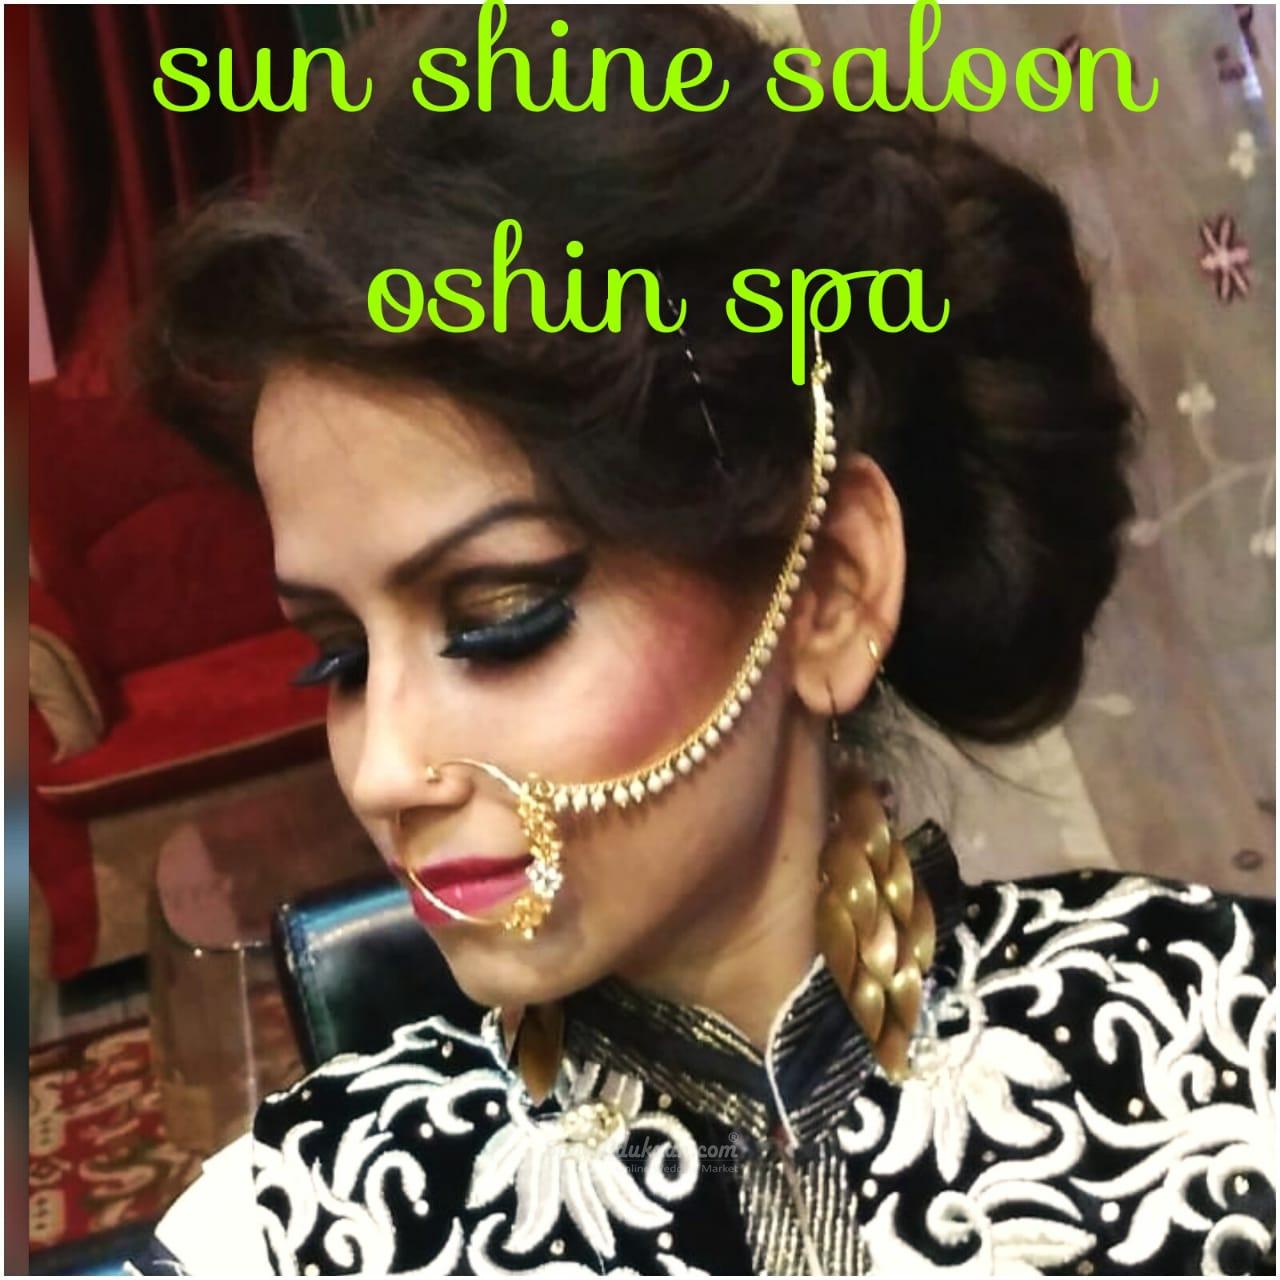 Sunshine salon and oshin spa